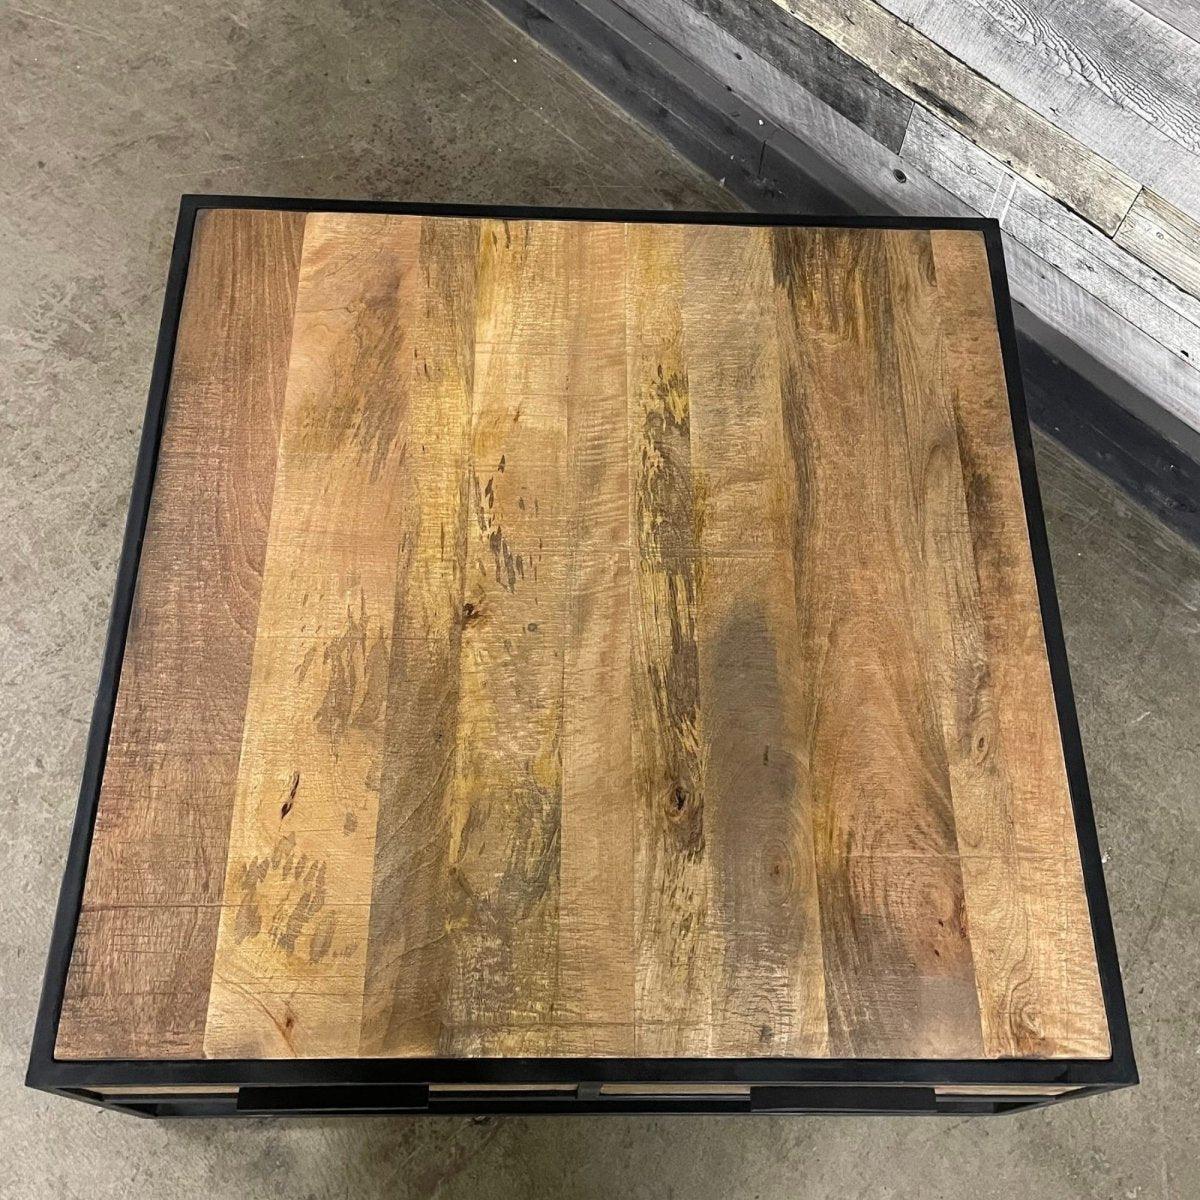 Table basse carrée Watson - Outlet de meubles rustiques